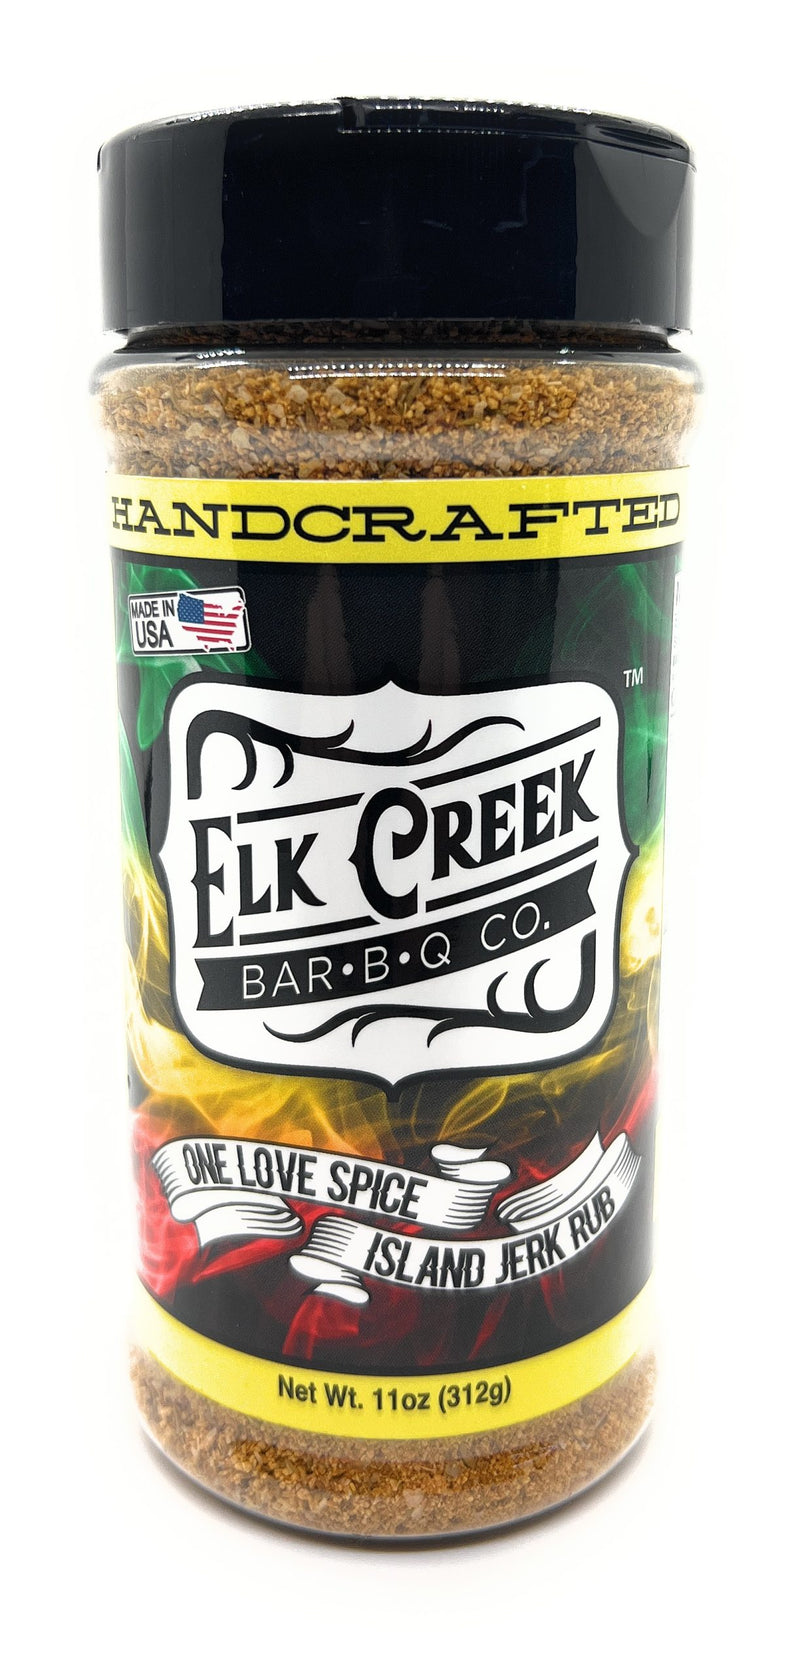 Elk Creek One Love Spice Island Jerk Rub